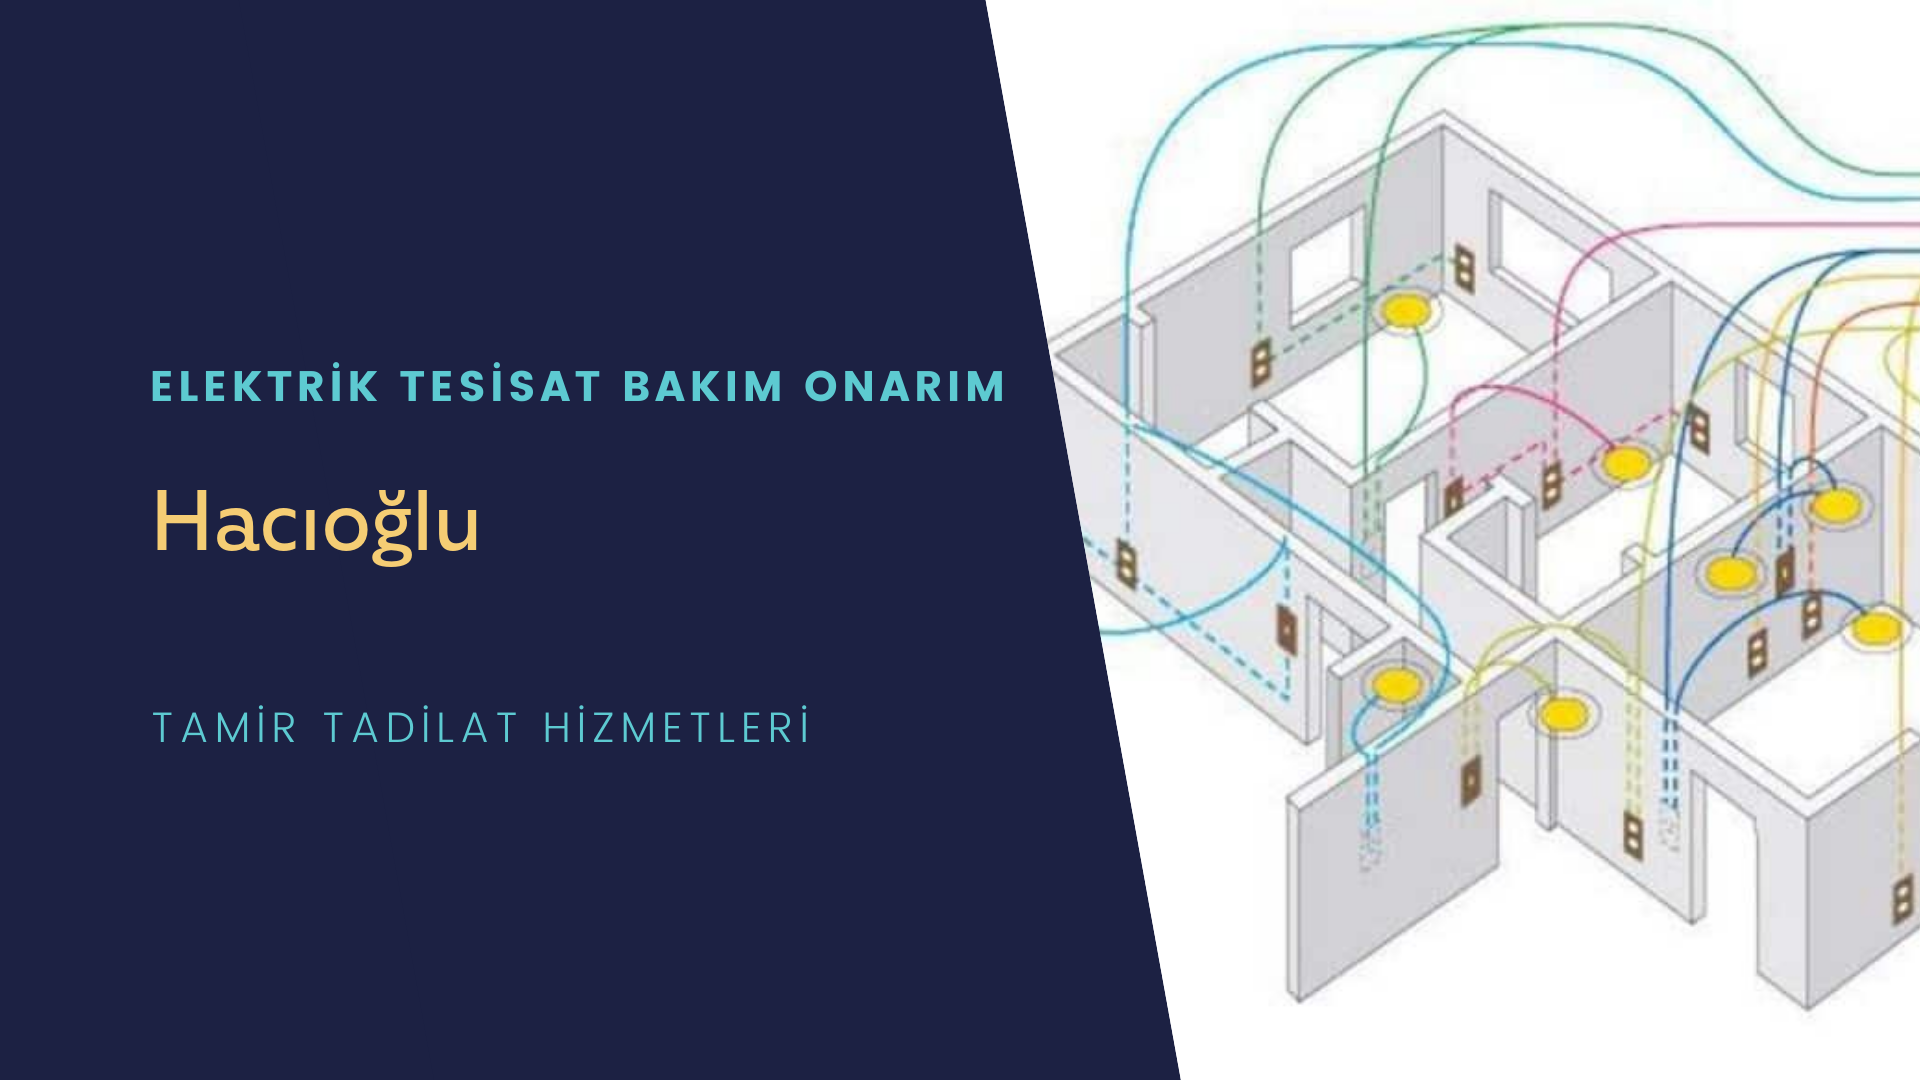 Hacıoğlu'da elektrik tesisatı ustalarımı arıyorsunuz doğru adrestenizi Hacıoğlu elektrik tesisatı ustalarımız 7/24 sizlere hizmet vermekten mutluluk duyar.